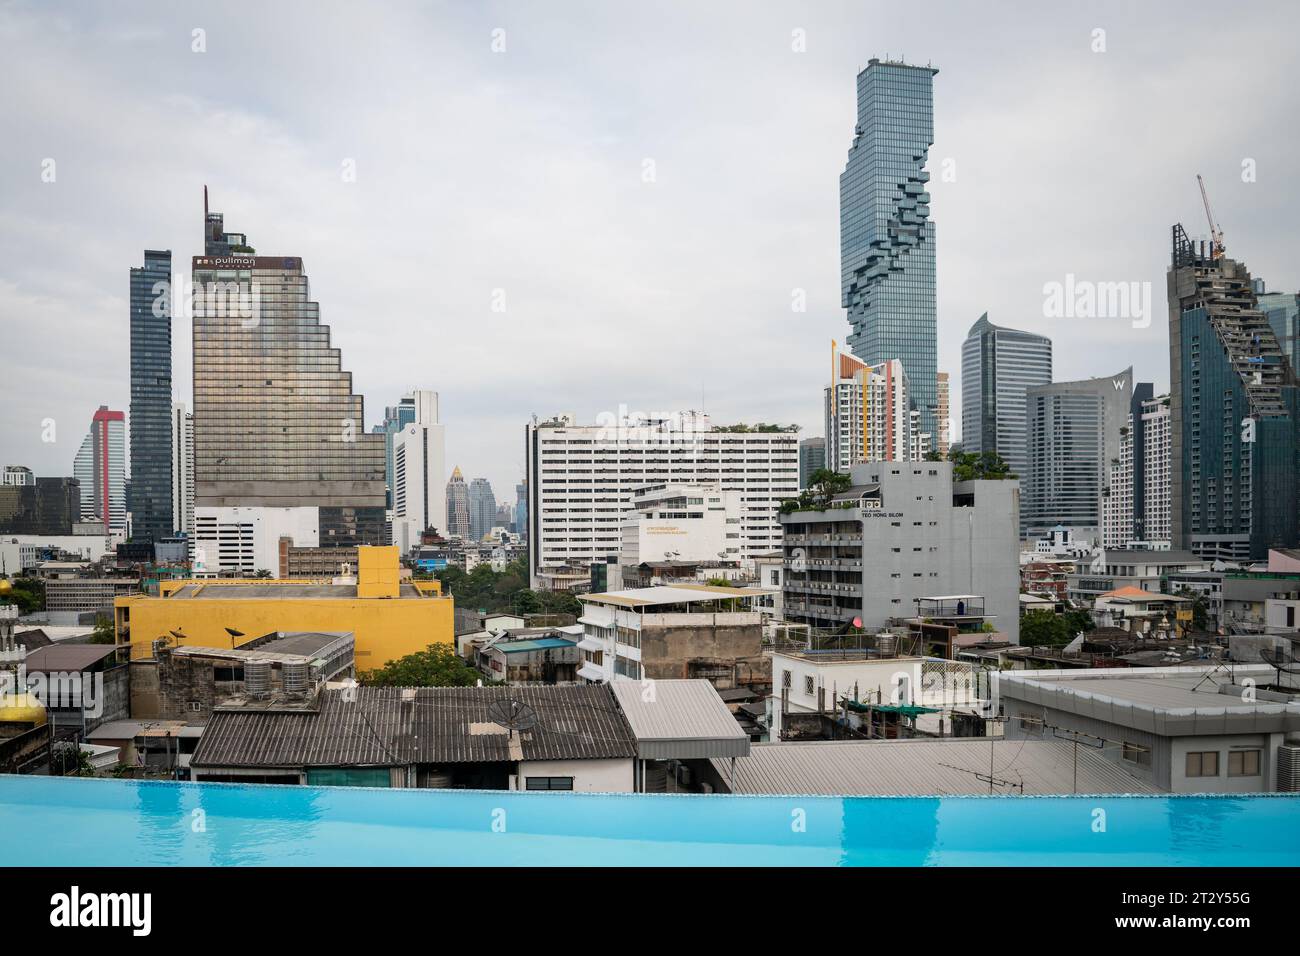 La vista dello skyline di Bangkok si affaccia sull'area di Silom e Sathorn della città e mostra il grattacielo King Power Mahanakhon in lontananza. Foto Stock